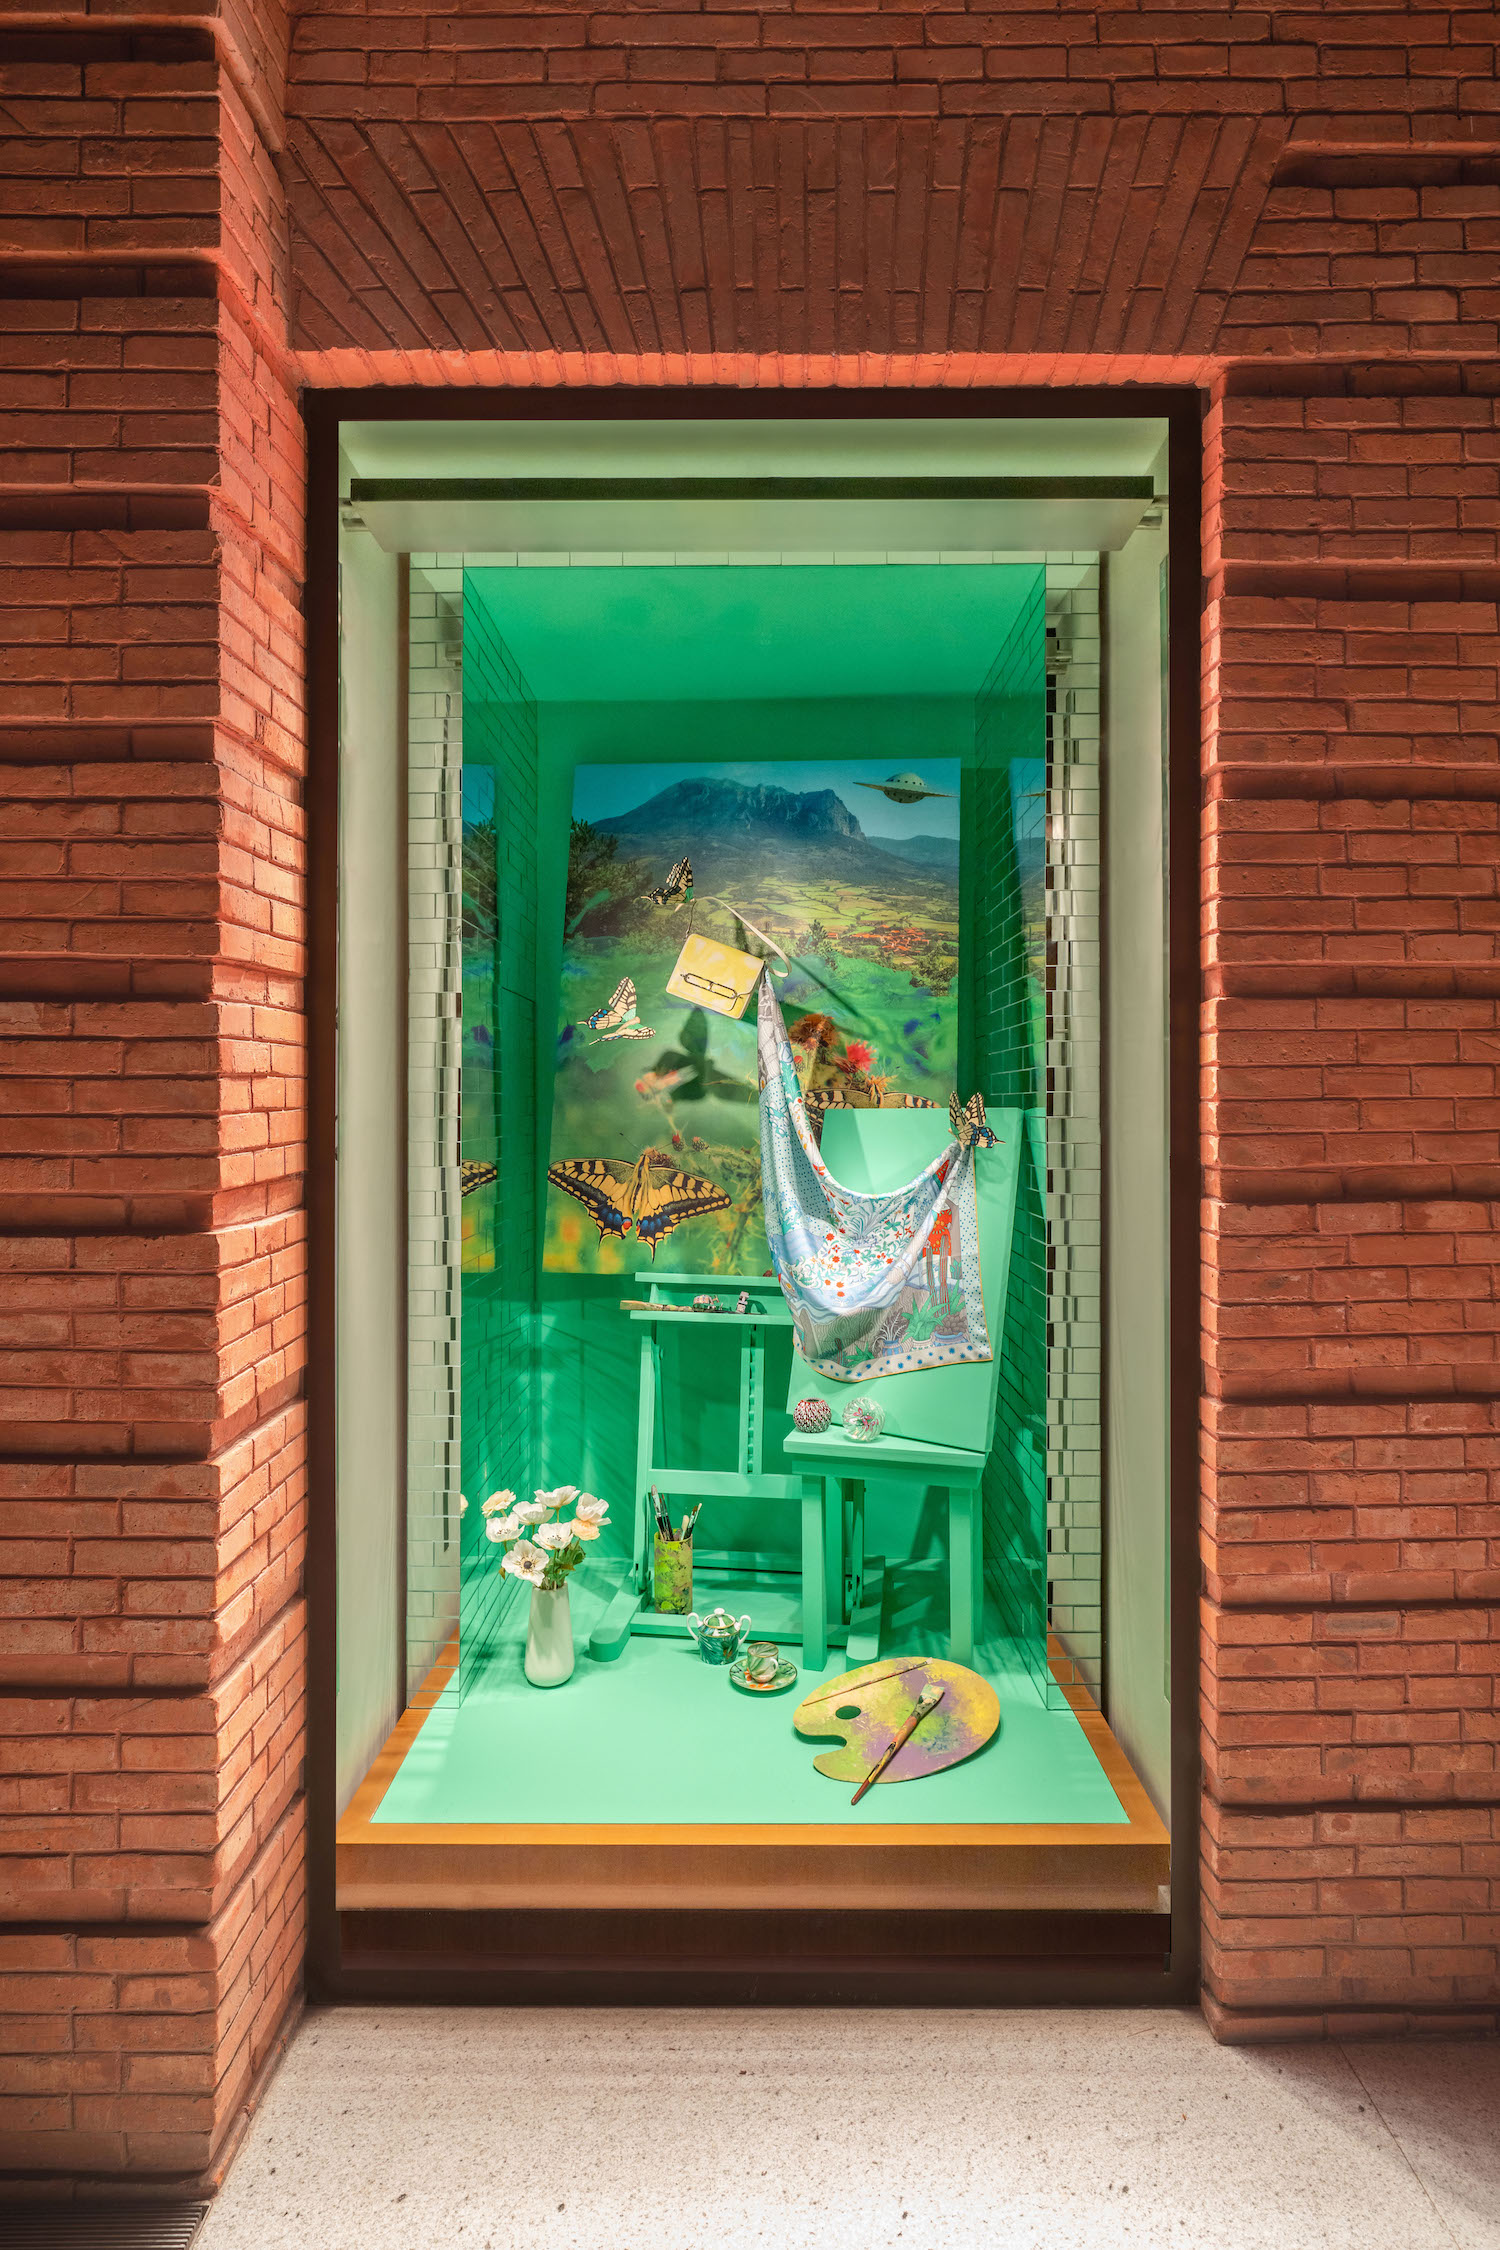 爱马仕携艺术家勾勒春季橱窗,普拉达以炫彩条纹打造惬意风情